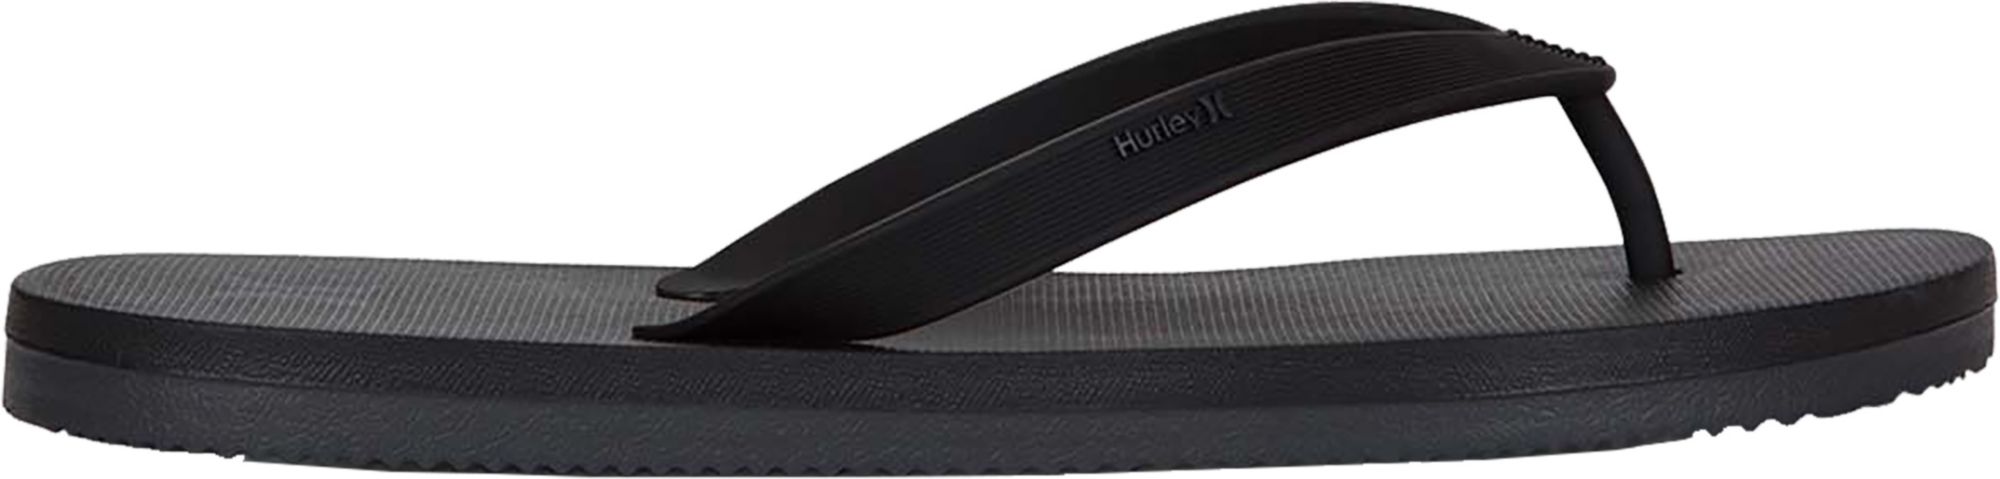 hurley womens flip flops